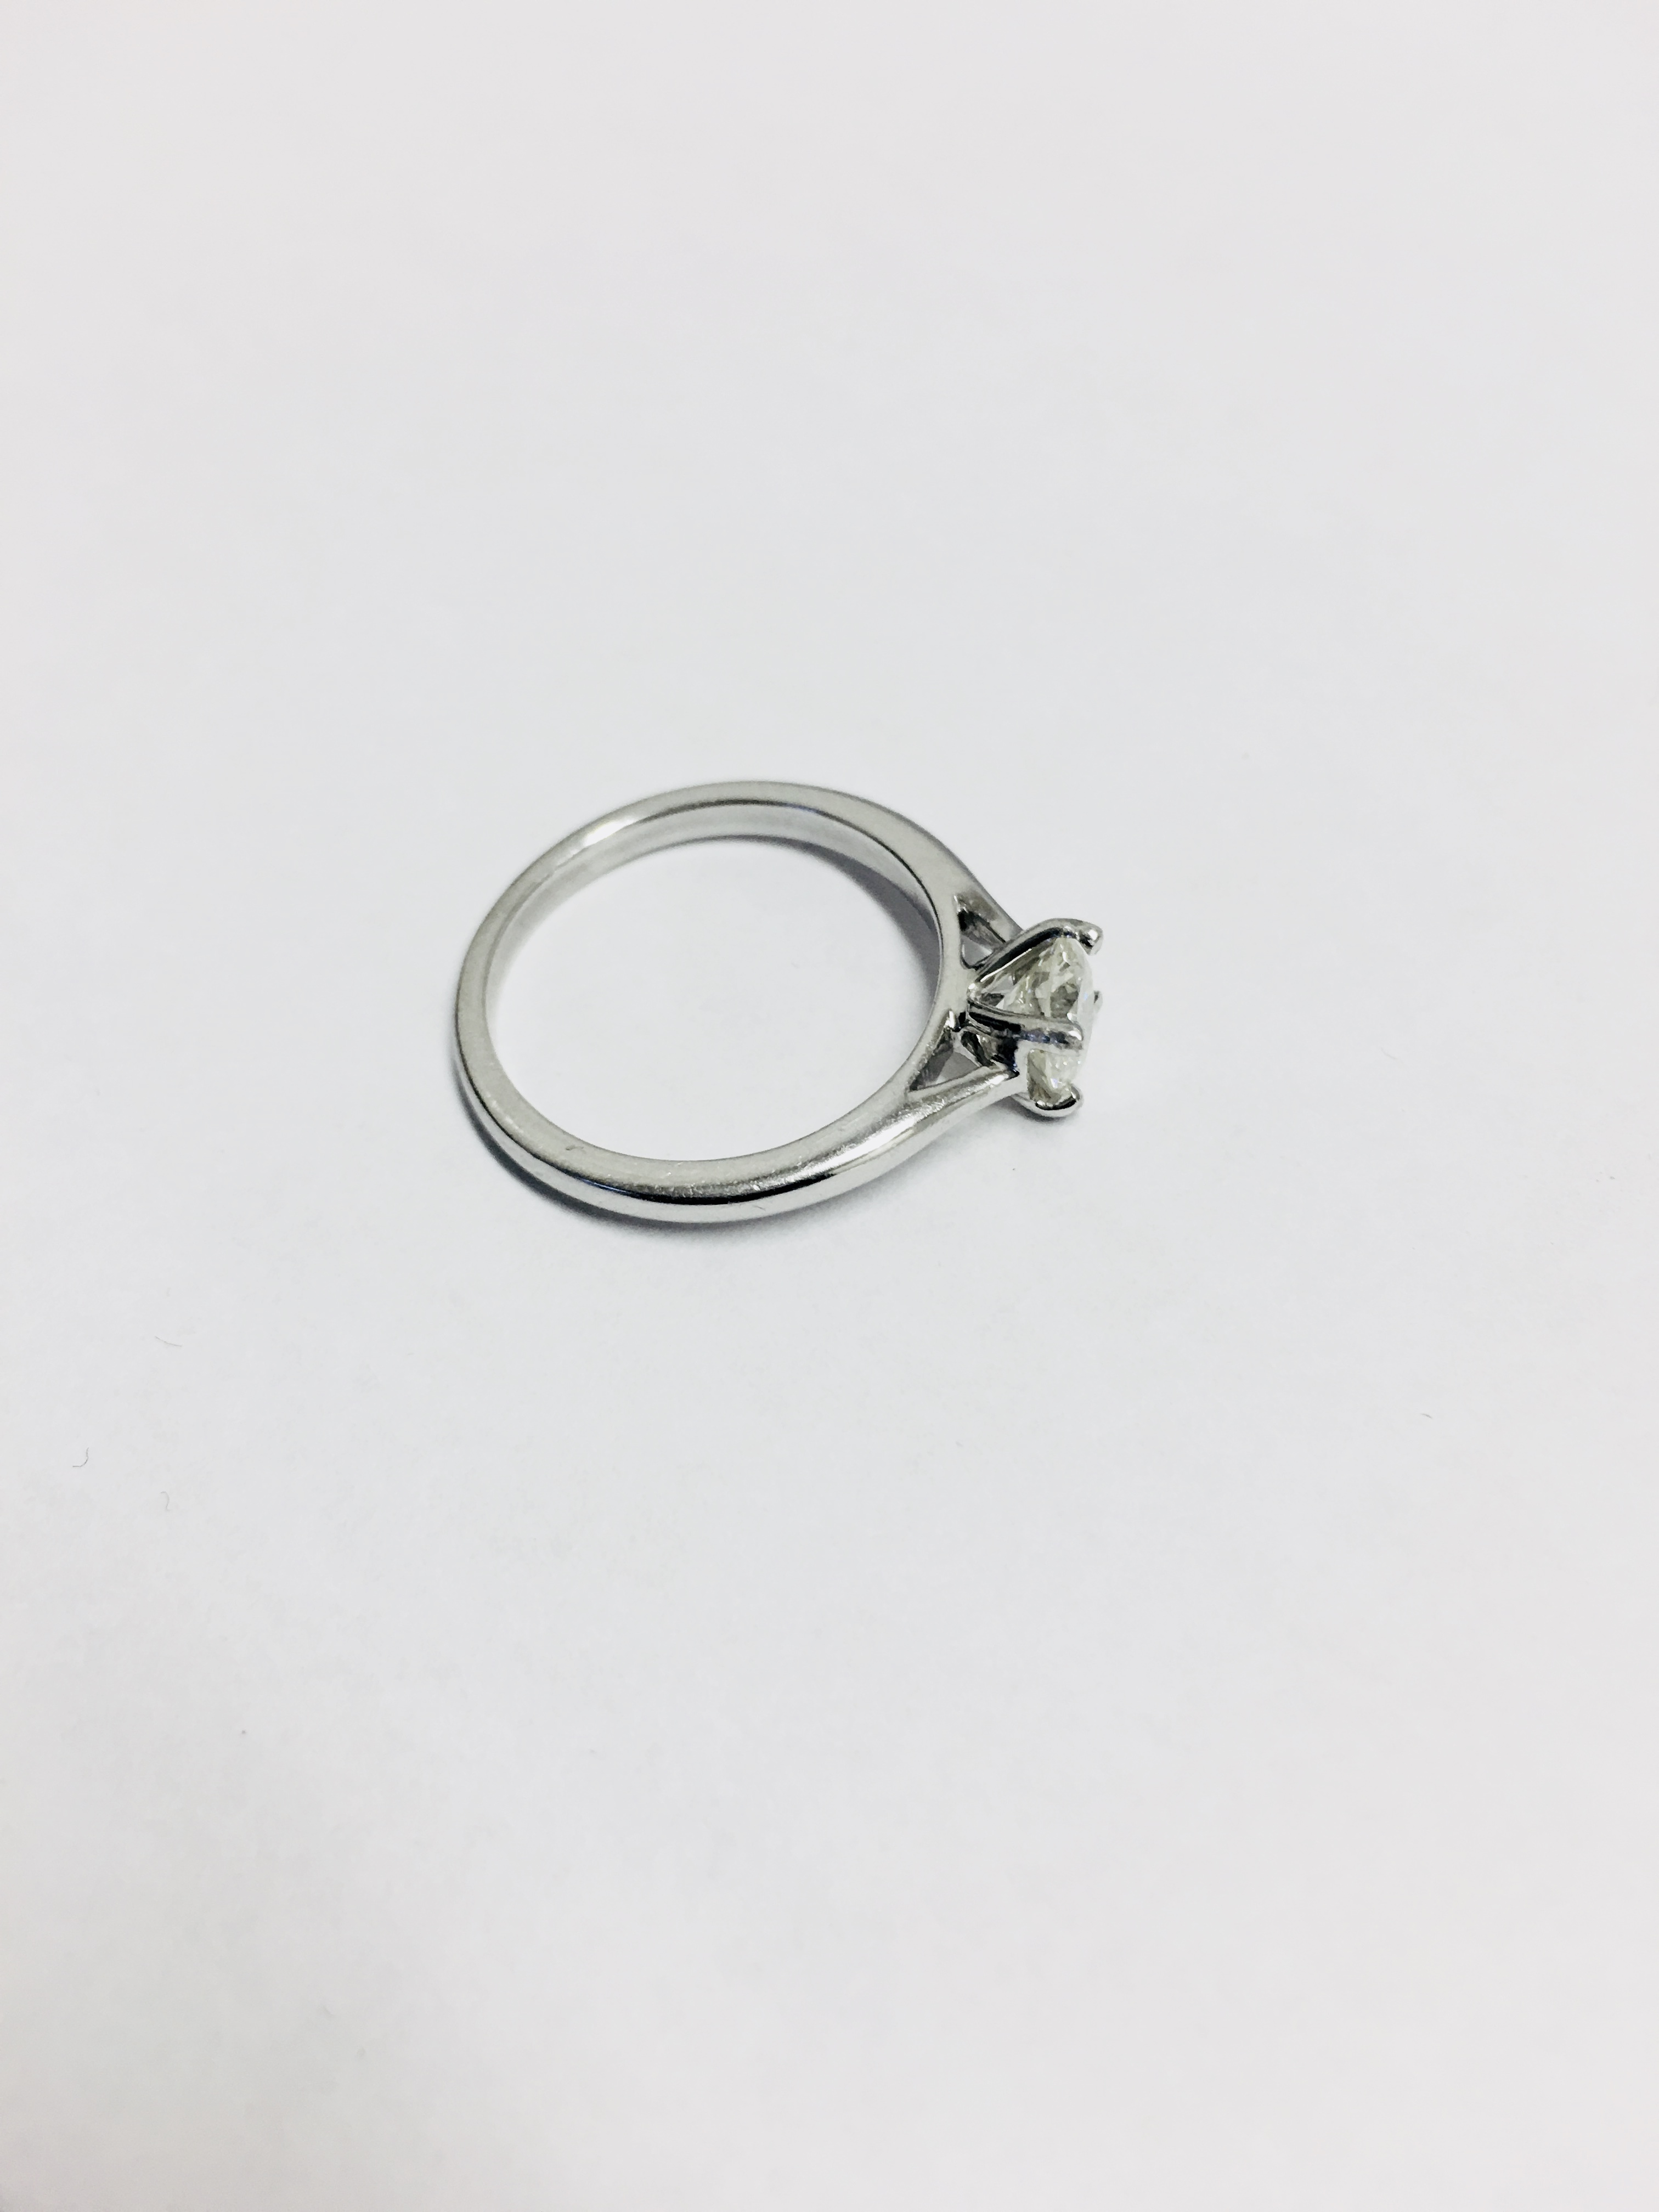 1ct Brilliant cut diamond ring set in platinum - Image 3 of 3